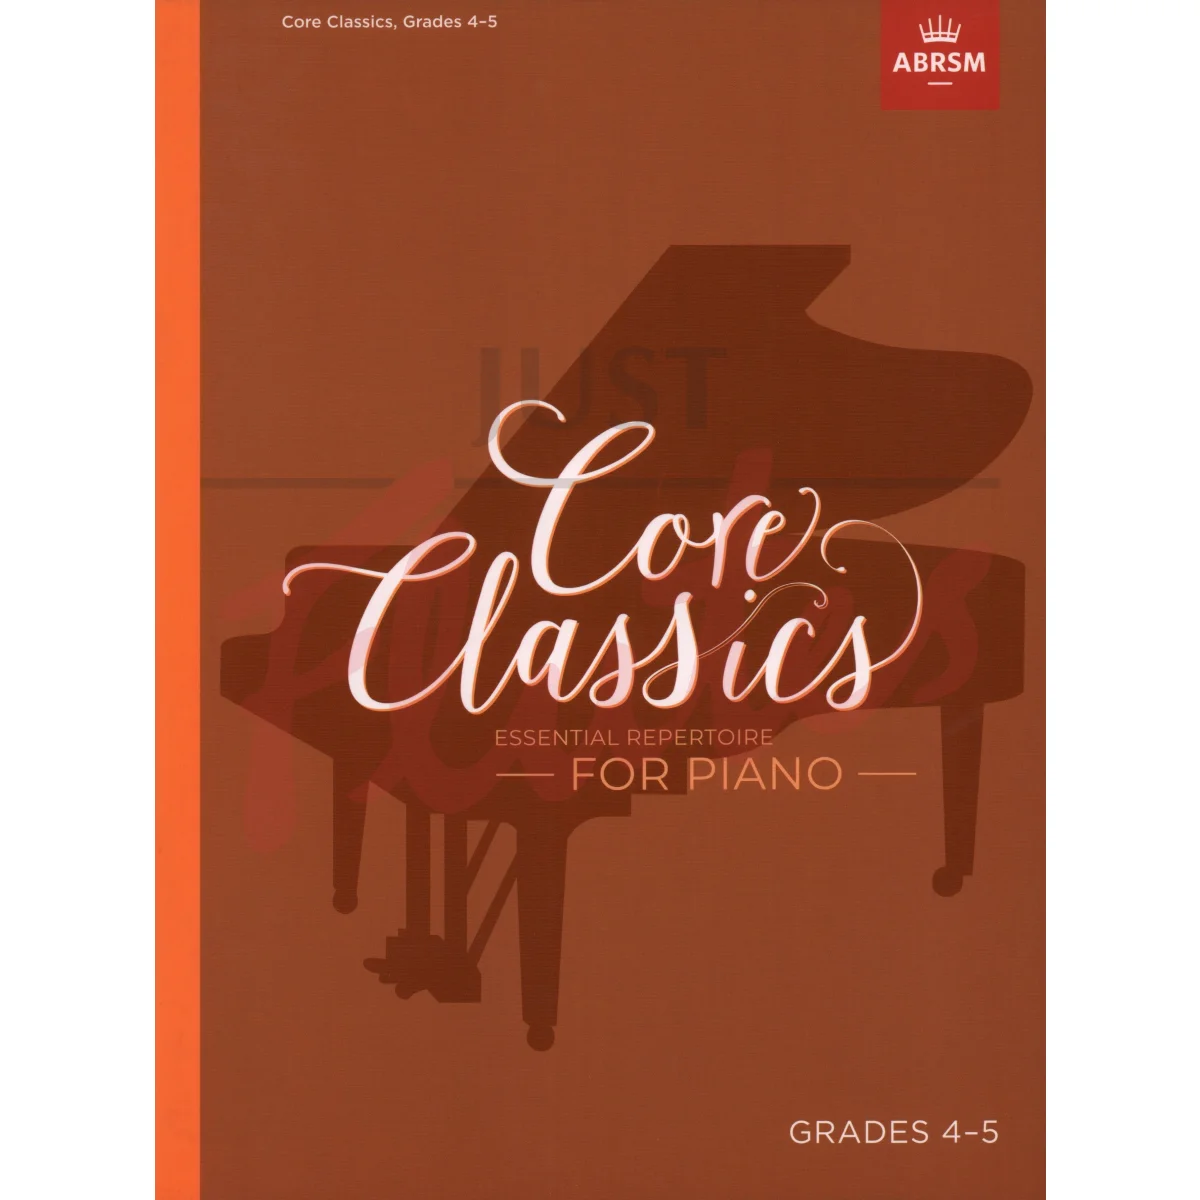 Core Classics Grades 4-5 Essential Repertoire for Piano